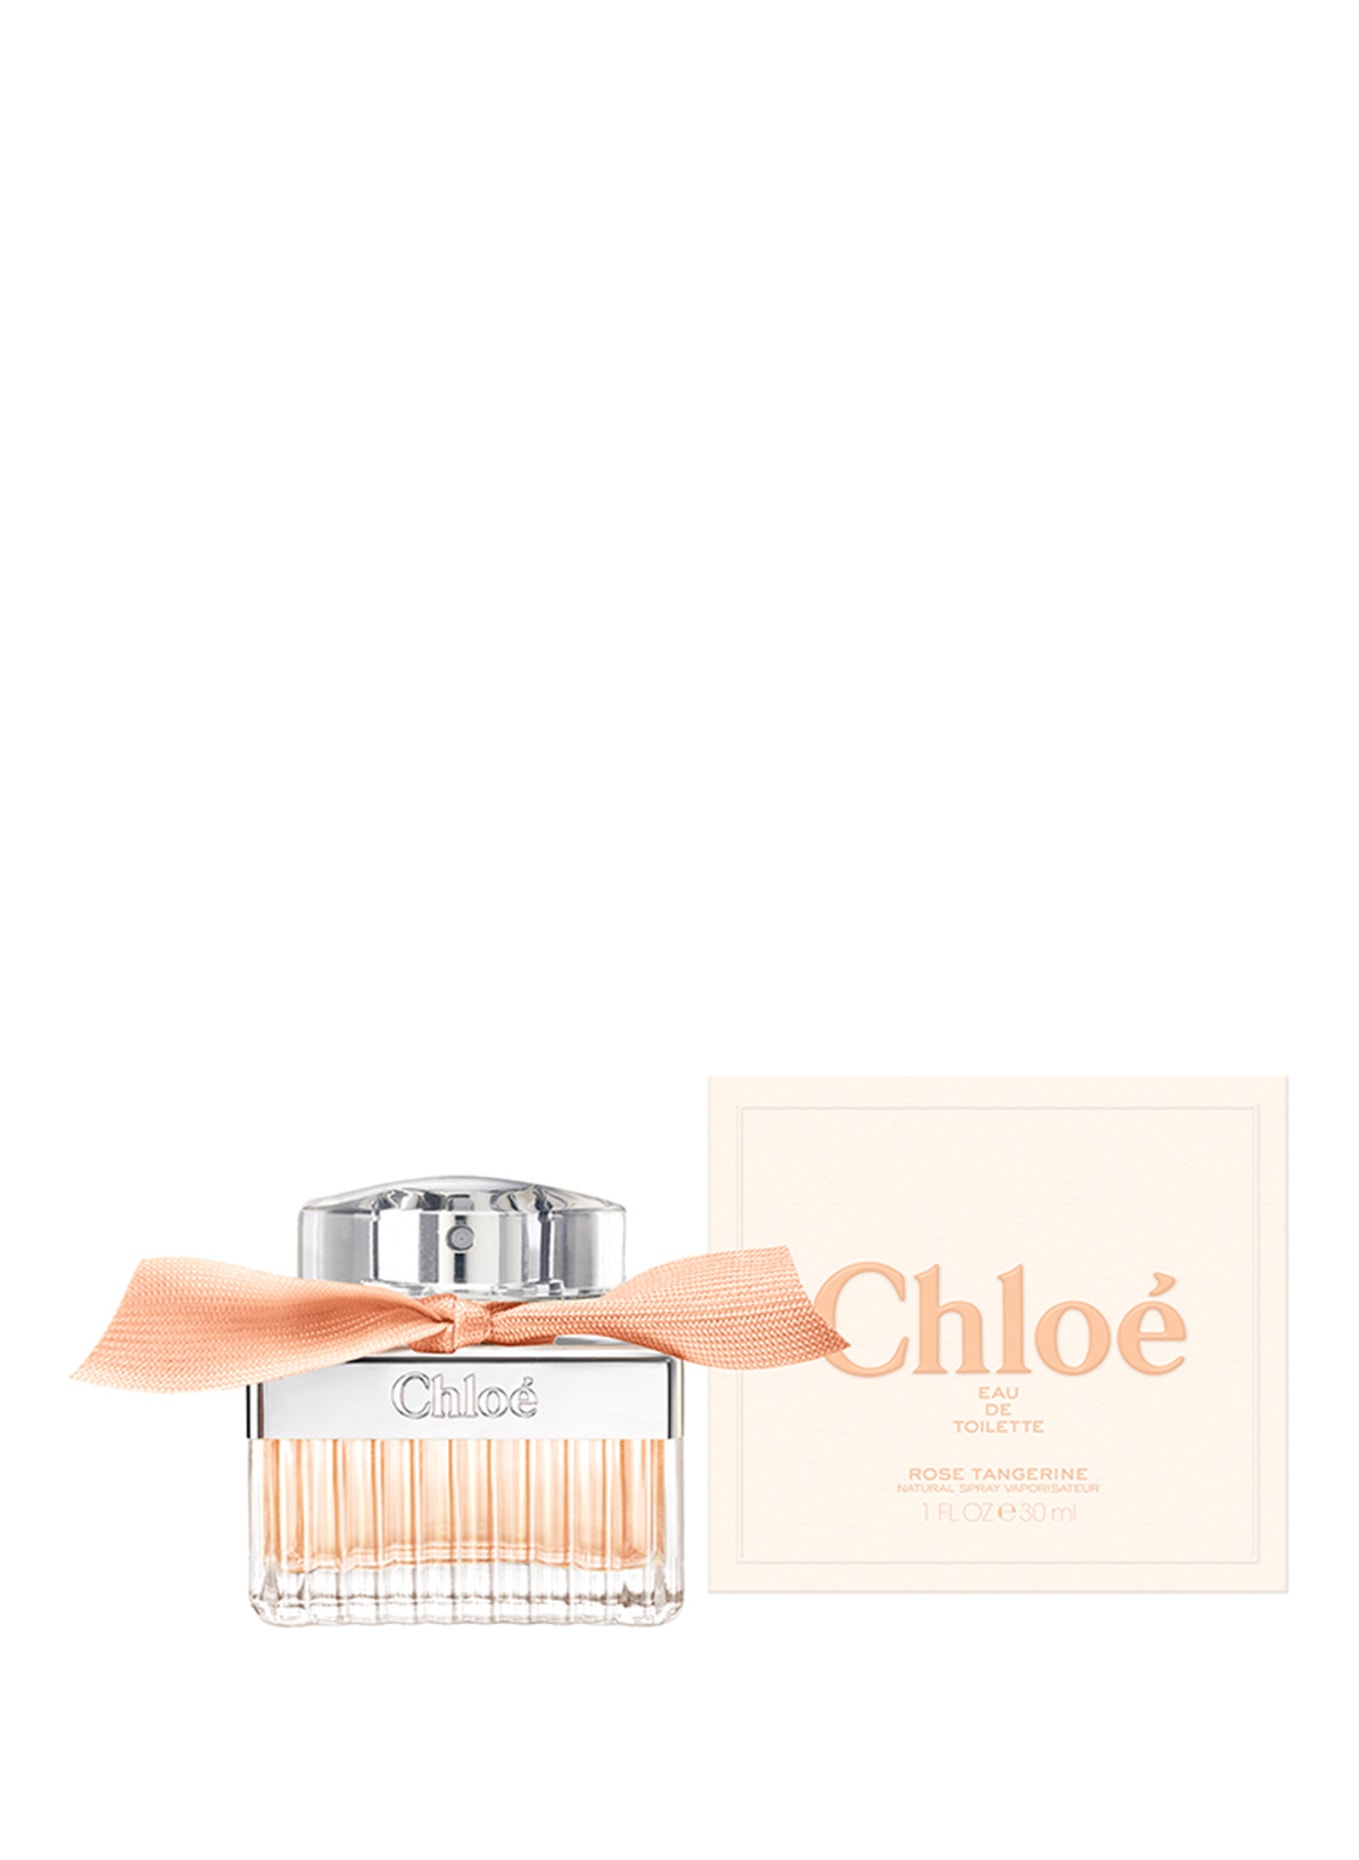 Chloé Fragrances ROSE TANGERINE (Obrazek 2)